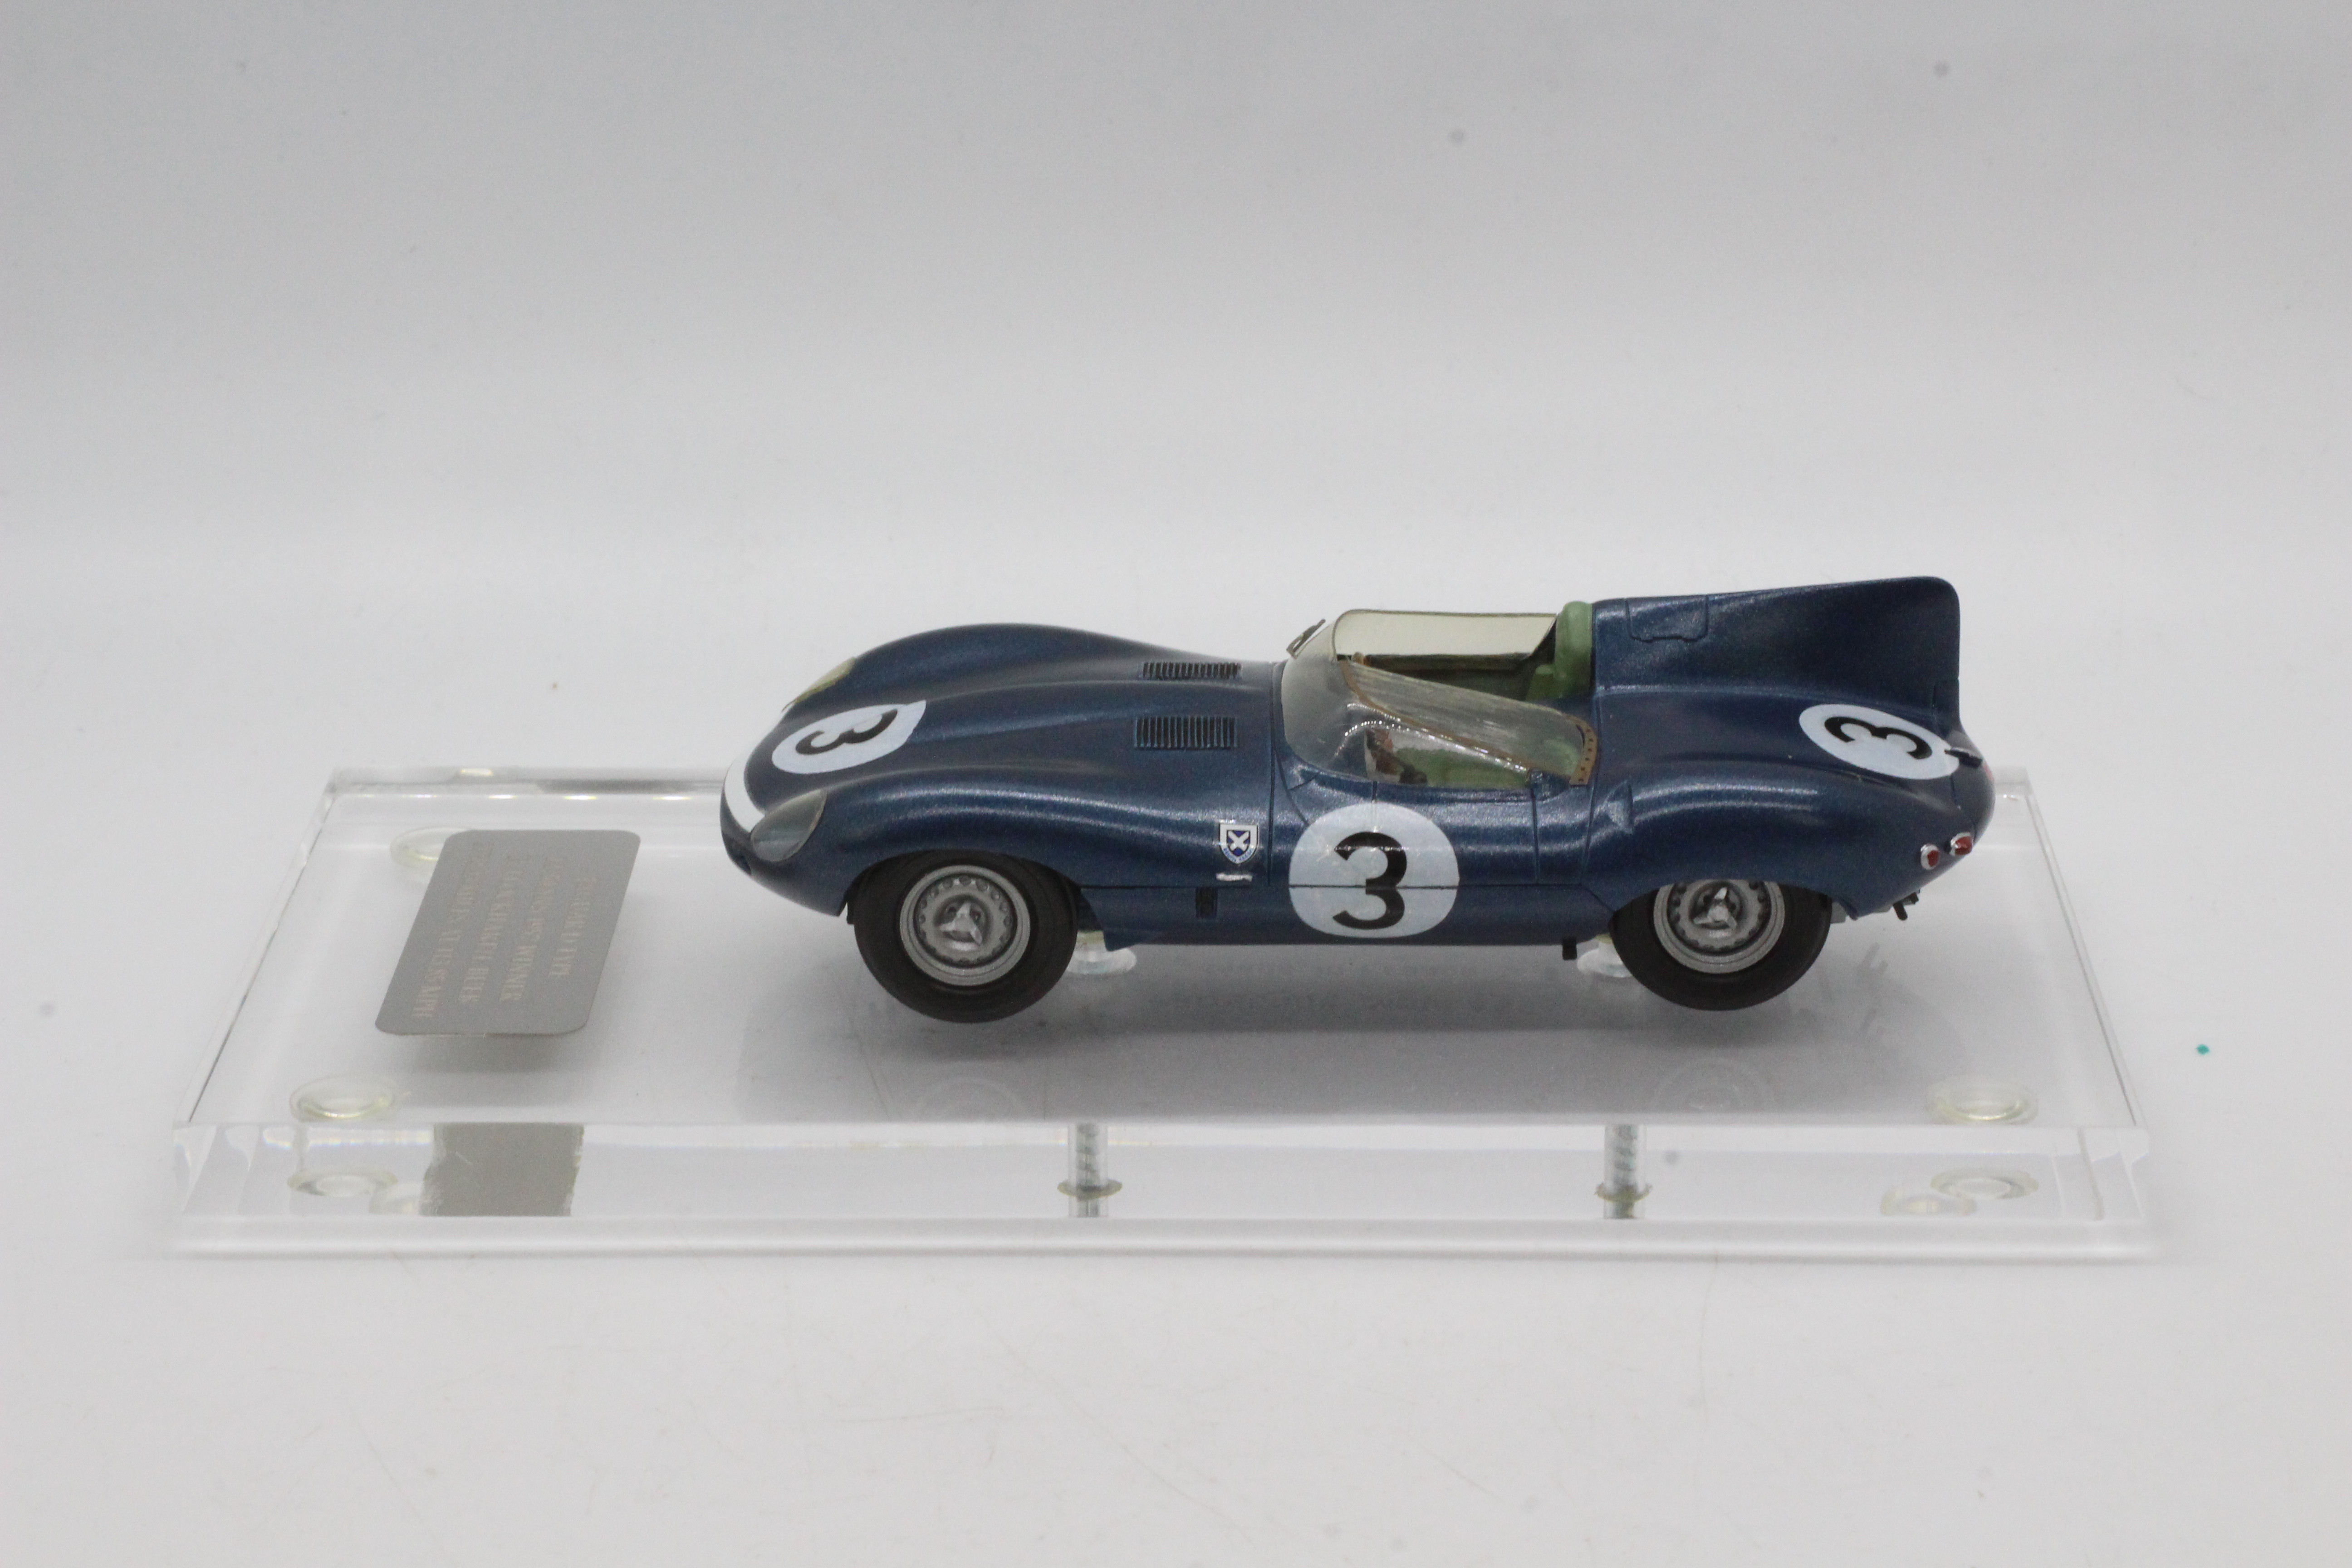 MPH Models, Tim Dyke - A boxed MPH Models #XXX Jaguar D-Type Le Mans 1957 'Ecurie Ecosse' R. - Image 2 of 8